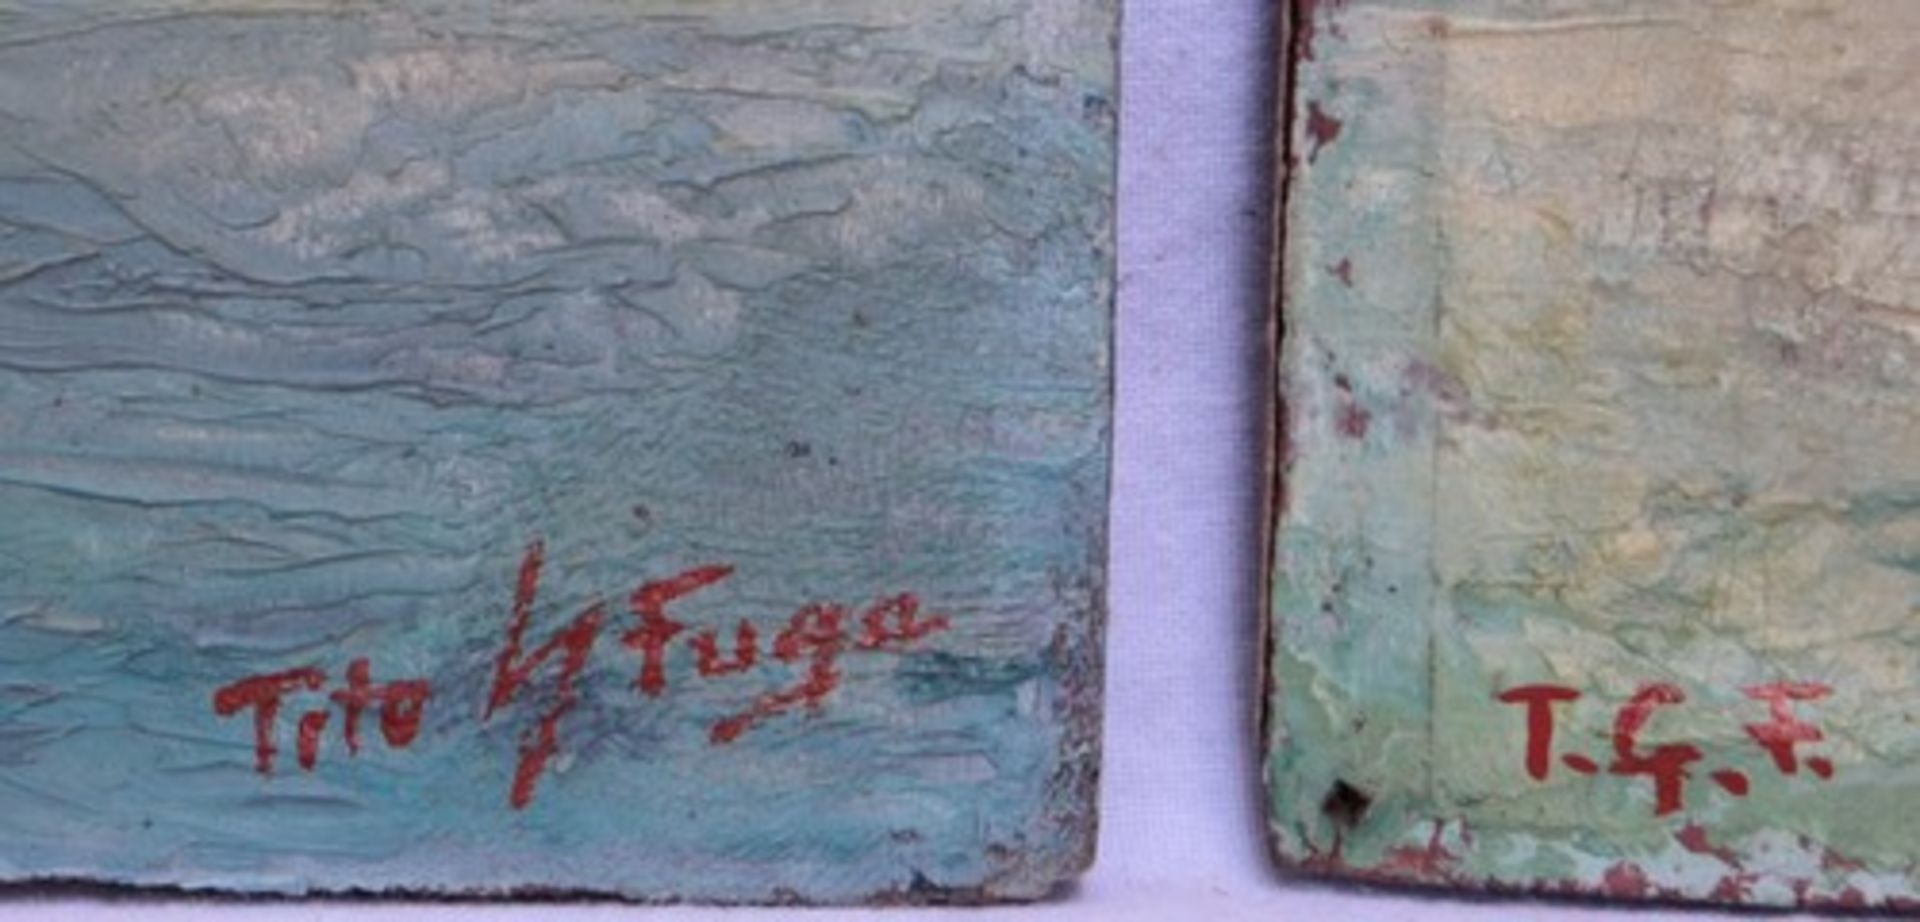 Fuga,Tito Giacinto - Pendant1.H. 20. Jh., venezianischer Maler, 2 Ölgemälde " Ansichten von - Bild 2 aus 3